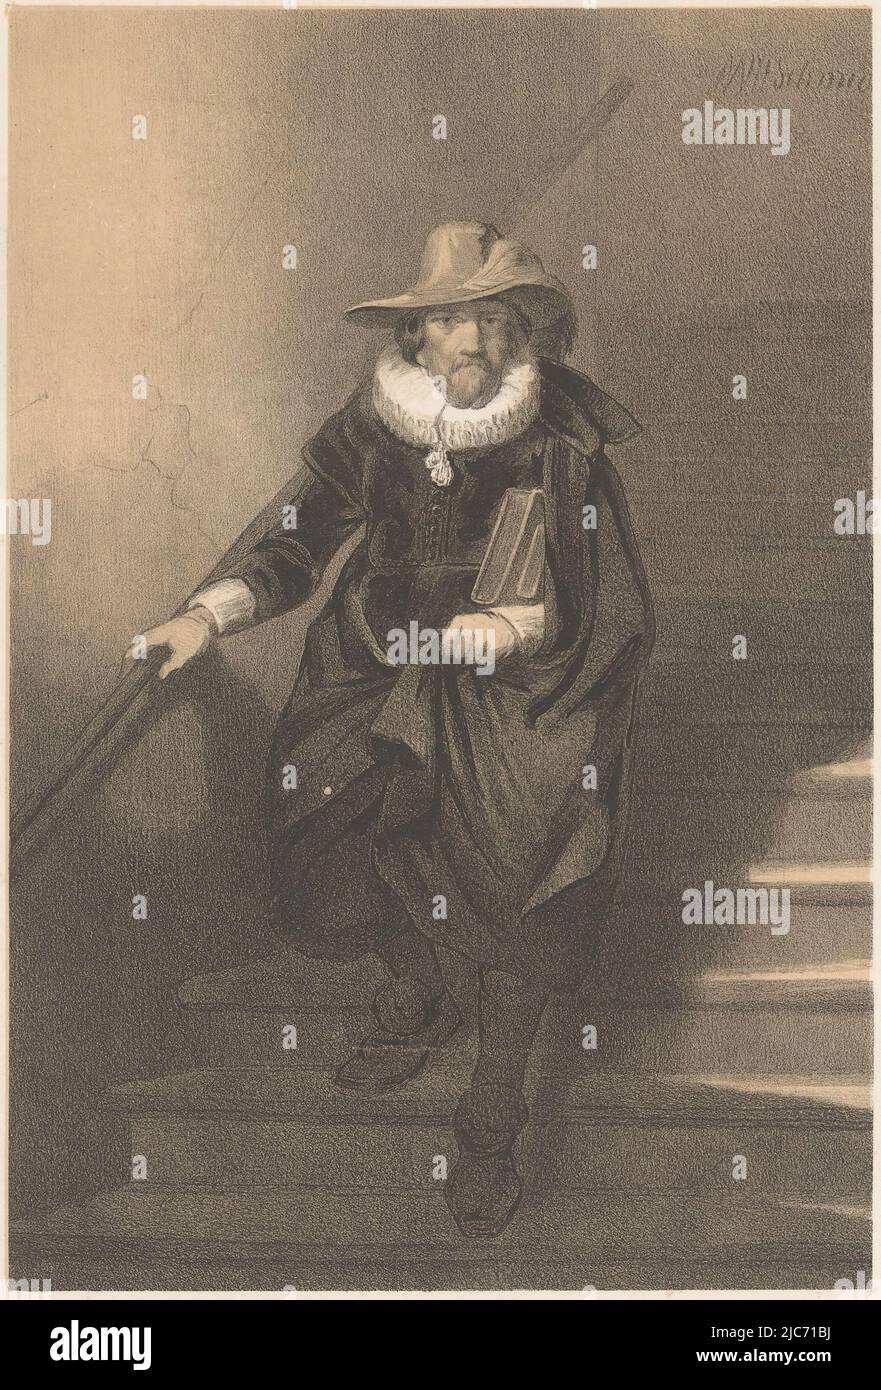 L'homme porte un chapeau avec une large visière. Il tient son manteau et  porte deux livres sous son bras gauche. Homme descendant les escaliers,  imprimeur: Anonyme, Willem Hendrik Schmidt, (mentionné sur l'objet),